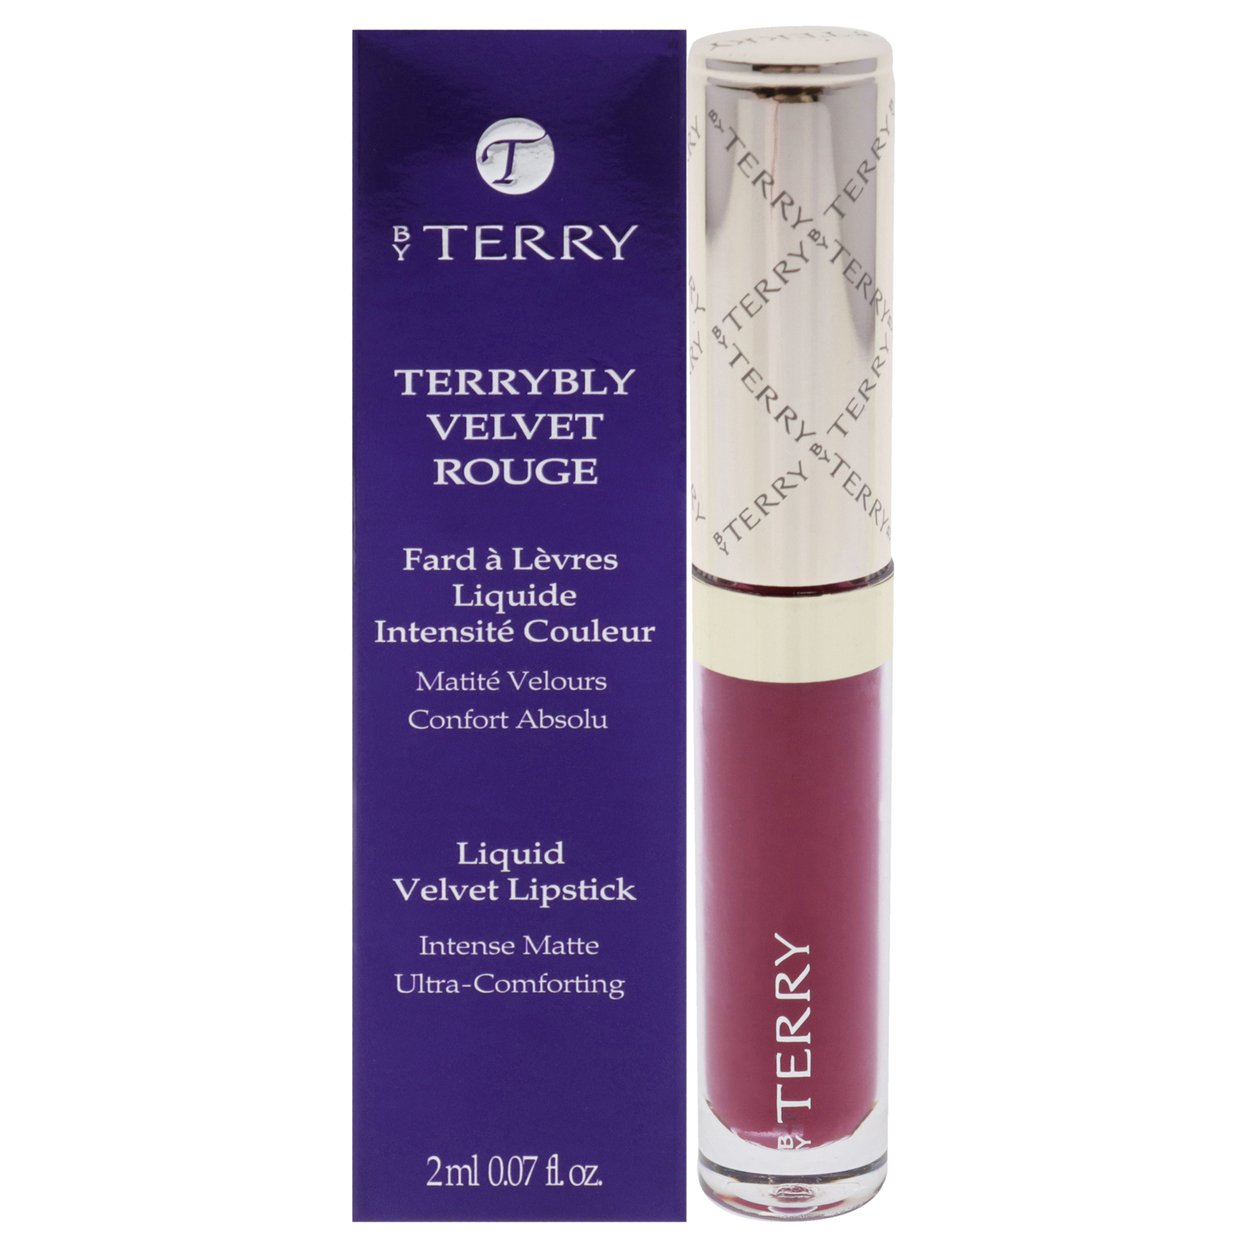 By Terry Terrybly Velvet Rouge Liquid Velvet Lipstick - 5 Baba Boom Lipstick 0.07 Oz